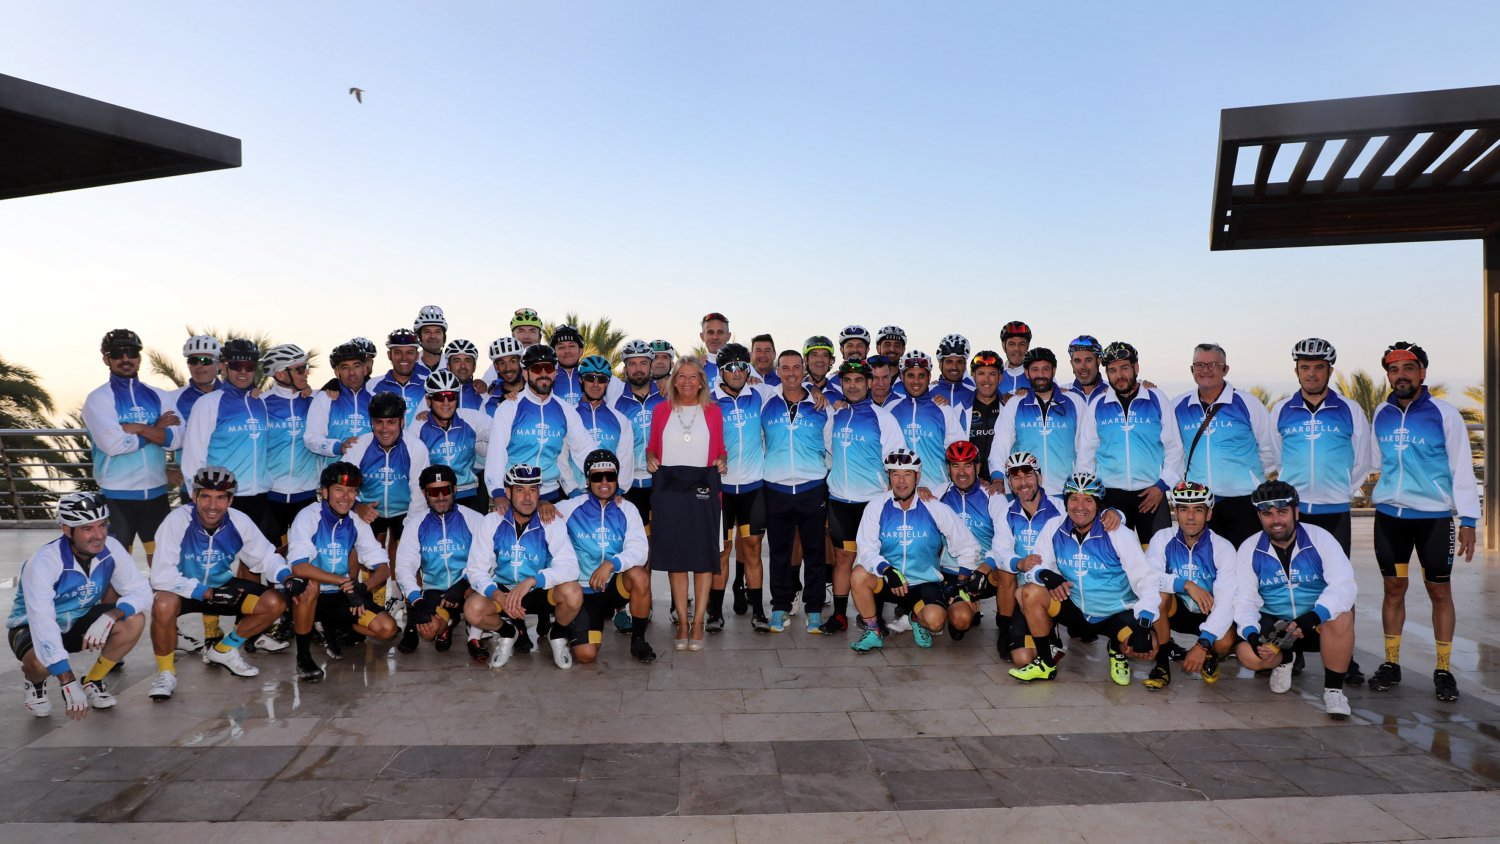 La alcaldesa arropa al Club Ciclista Marbella en su salida al Rocío y destaca “la dimensión promocional”